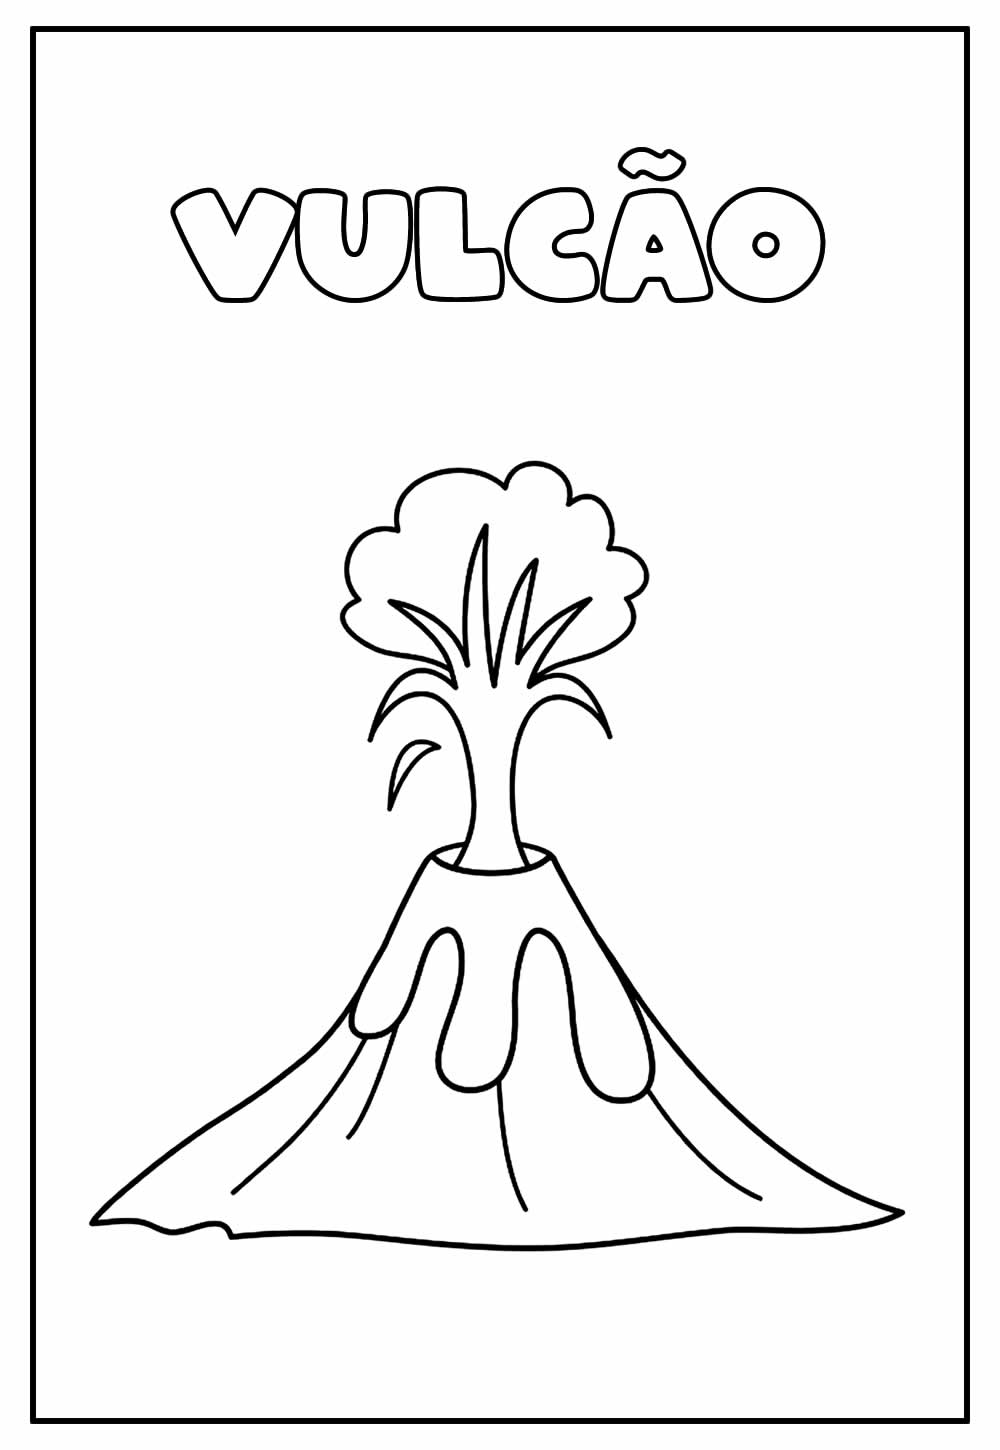 Desenho Educativo de Vulcão para colorir